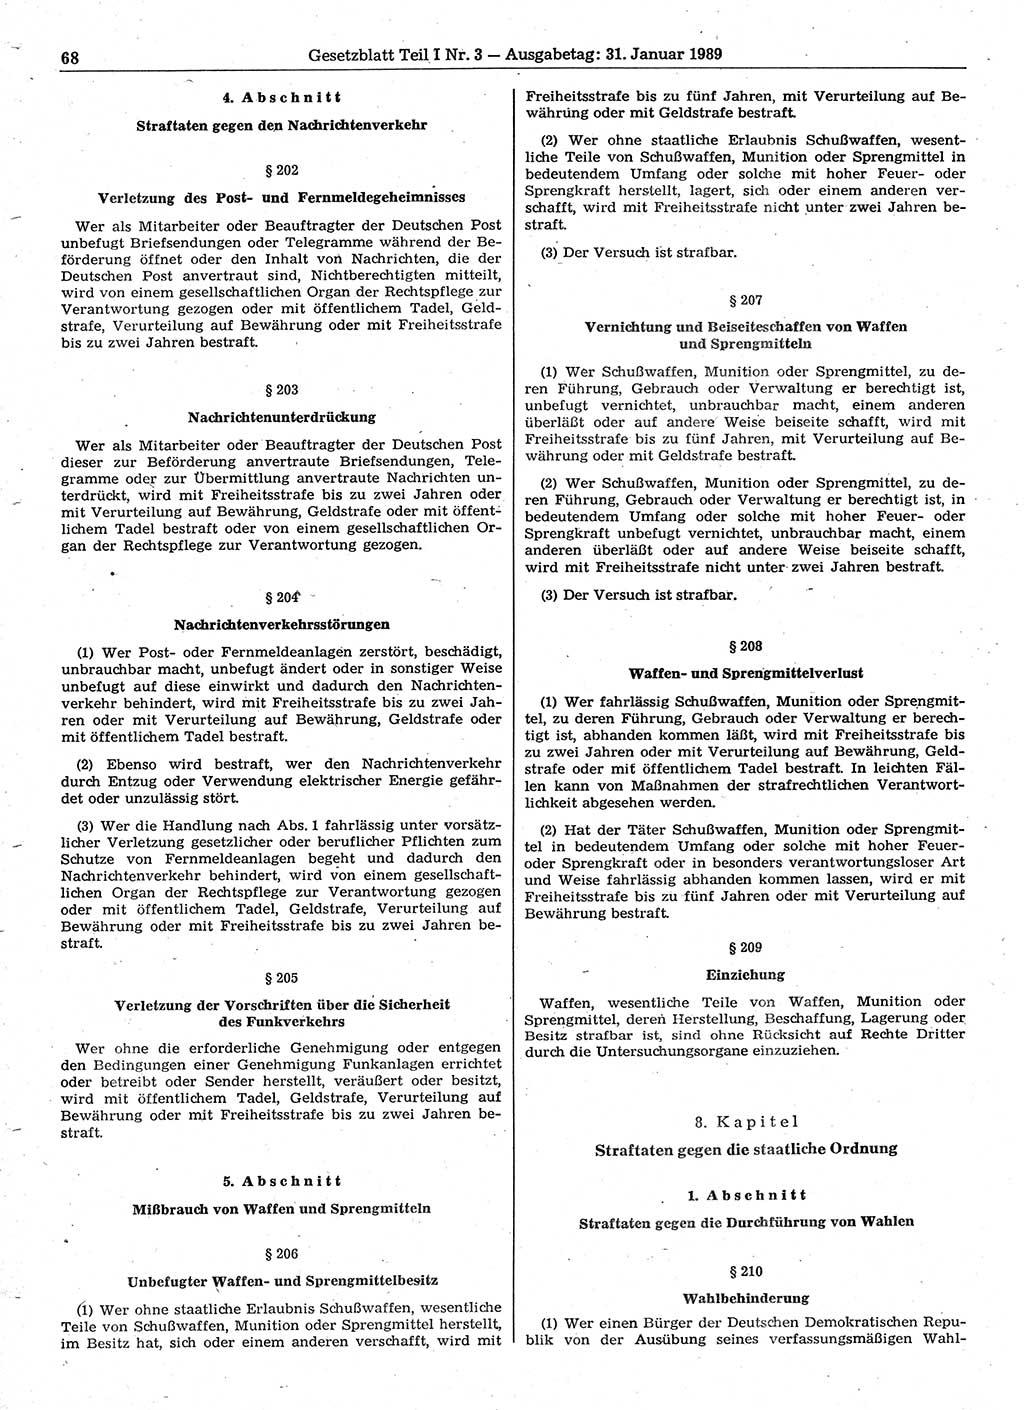 Gesetzblatt (GBl.) der Deutschen Demokratischen Republik (DDR) Teil Ⅰ 1989, Seite 68 (GBl. DDR Ⅰ 1989, S. 68)